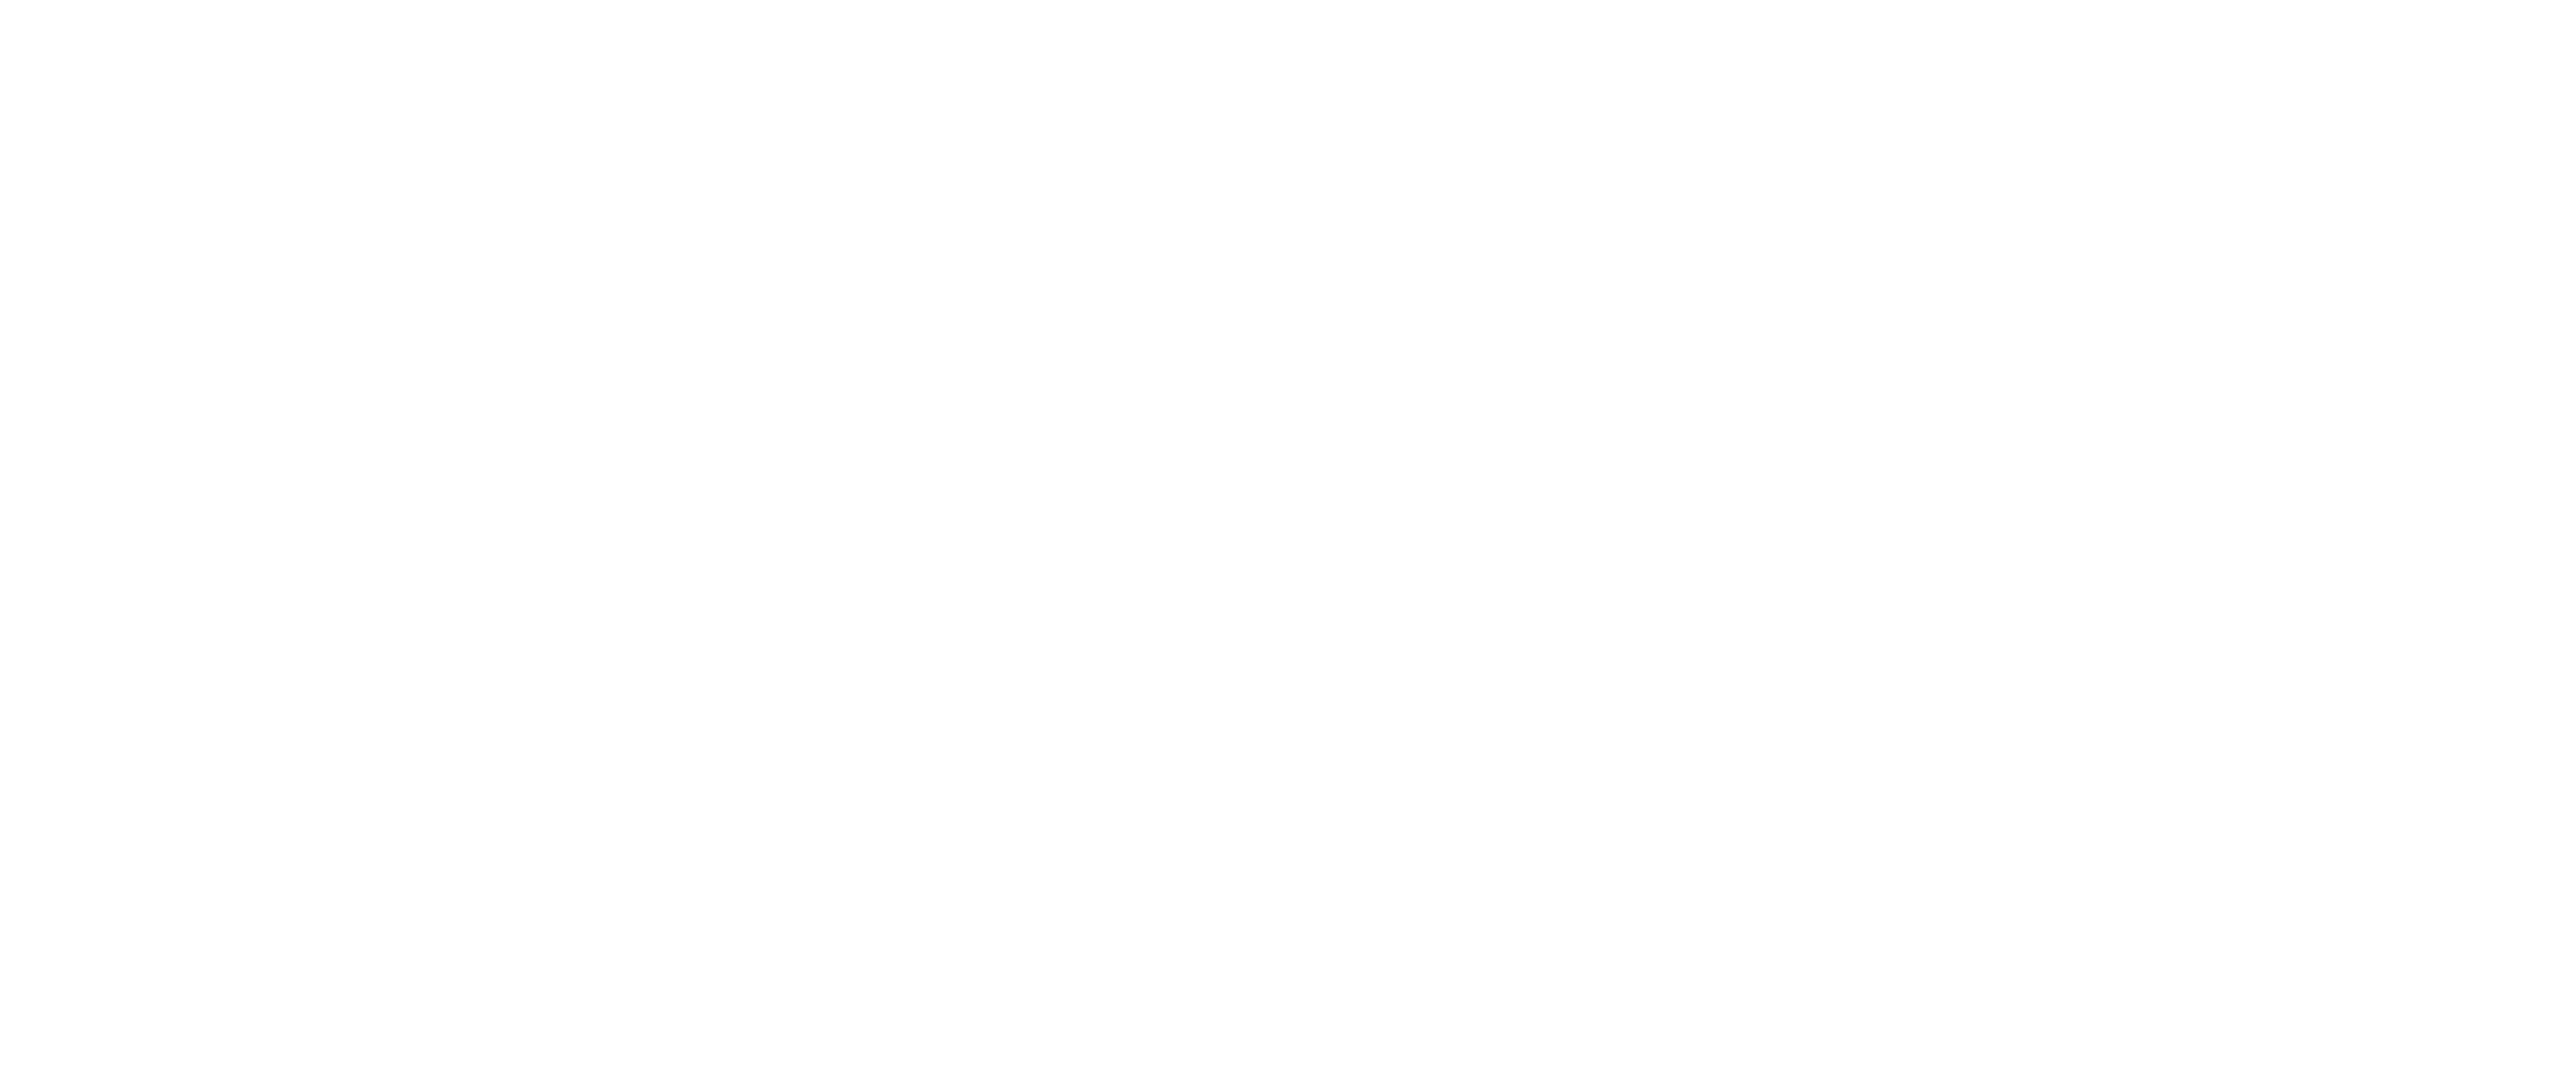 Danny Boy logo